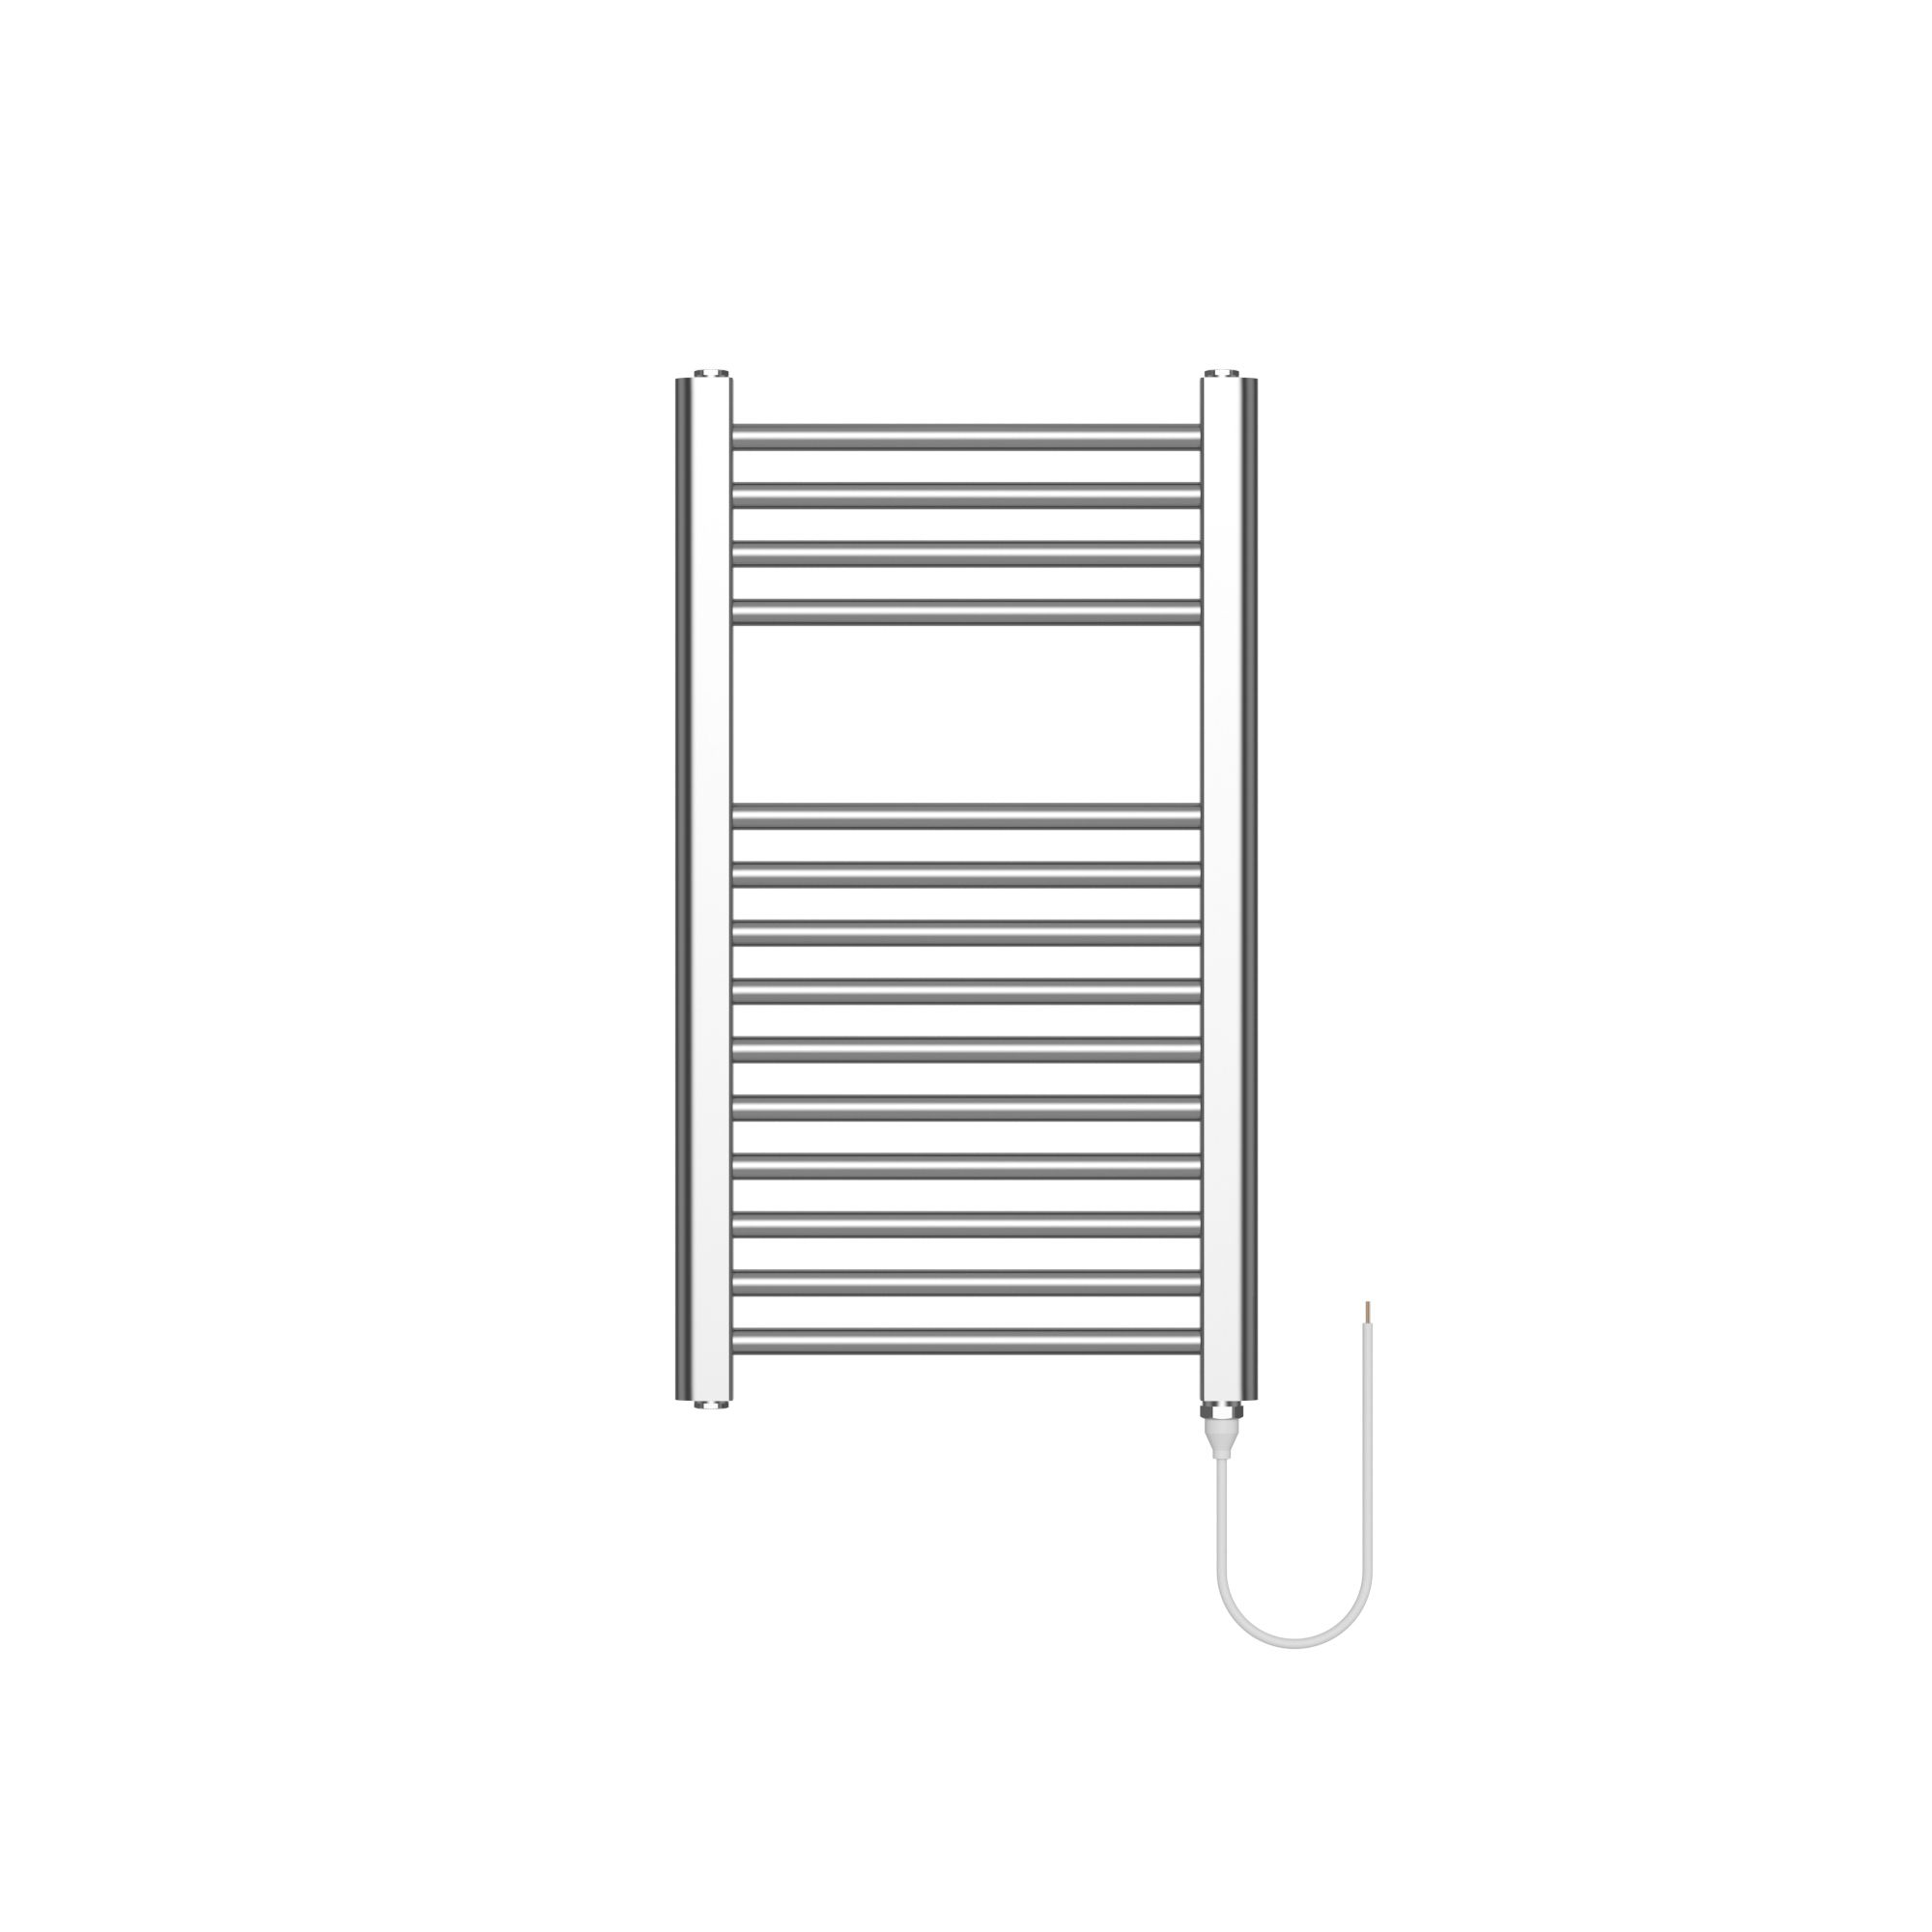 Flomasta Galene Chrome effect Flat Towel warmer (W)400mm x (H)700mm